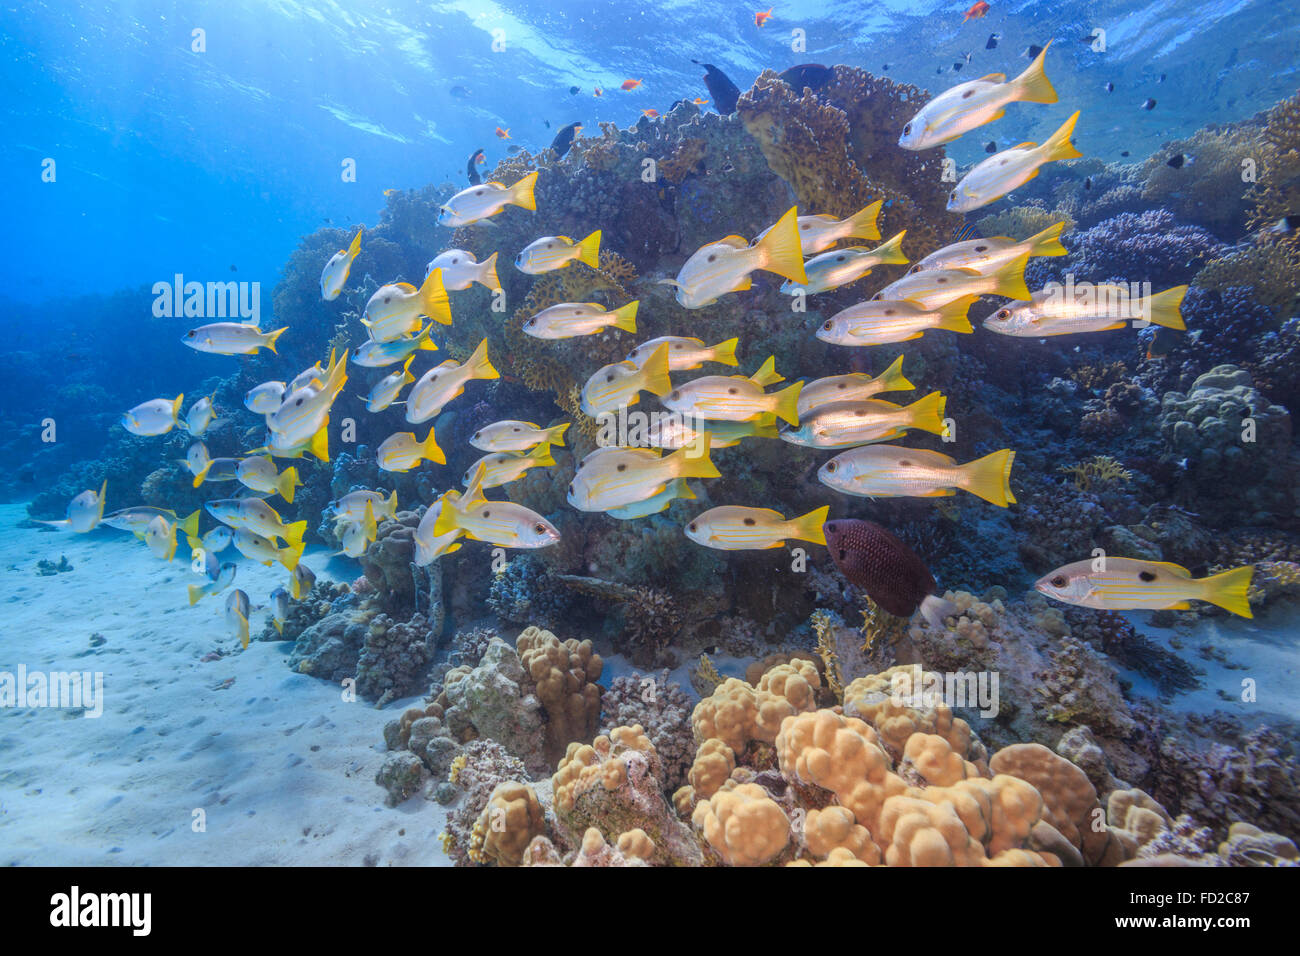 Aquatique, aquarium, fond, bleu, corail, coloré, profond, profondeur, plongeur, plongée, Egypte, exotique, poisson, poissons, le paysage, la vie, Banque D'Images